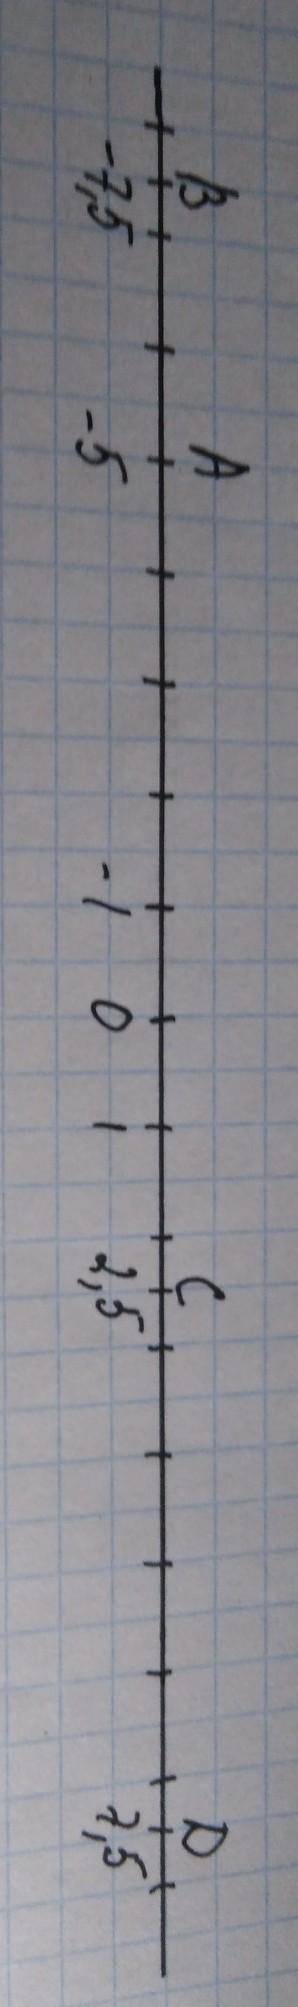 A)на кординатной прямой отметьте точки A(-5).B(-7,5).C(2,5).D(7,5) б)Укажите точки с противоположным